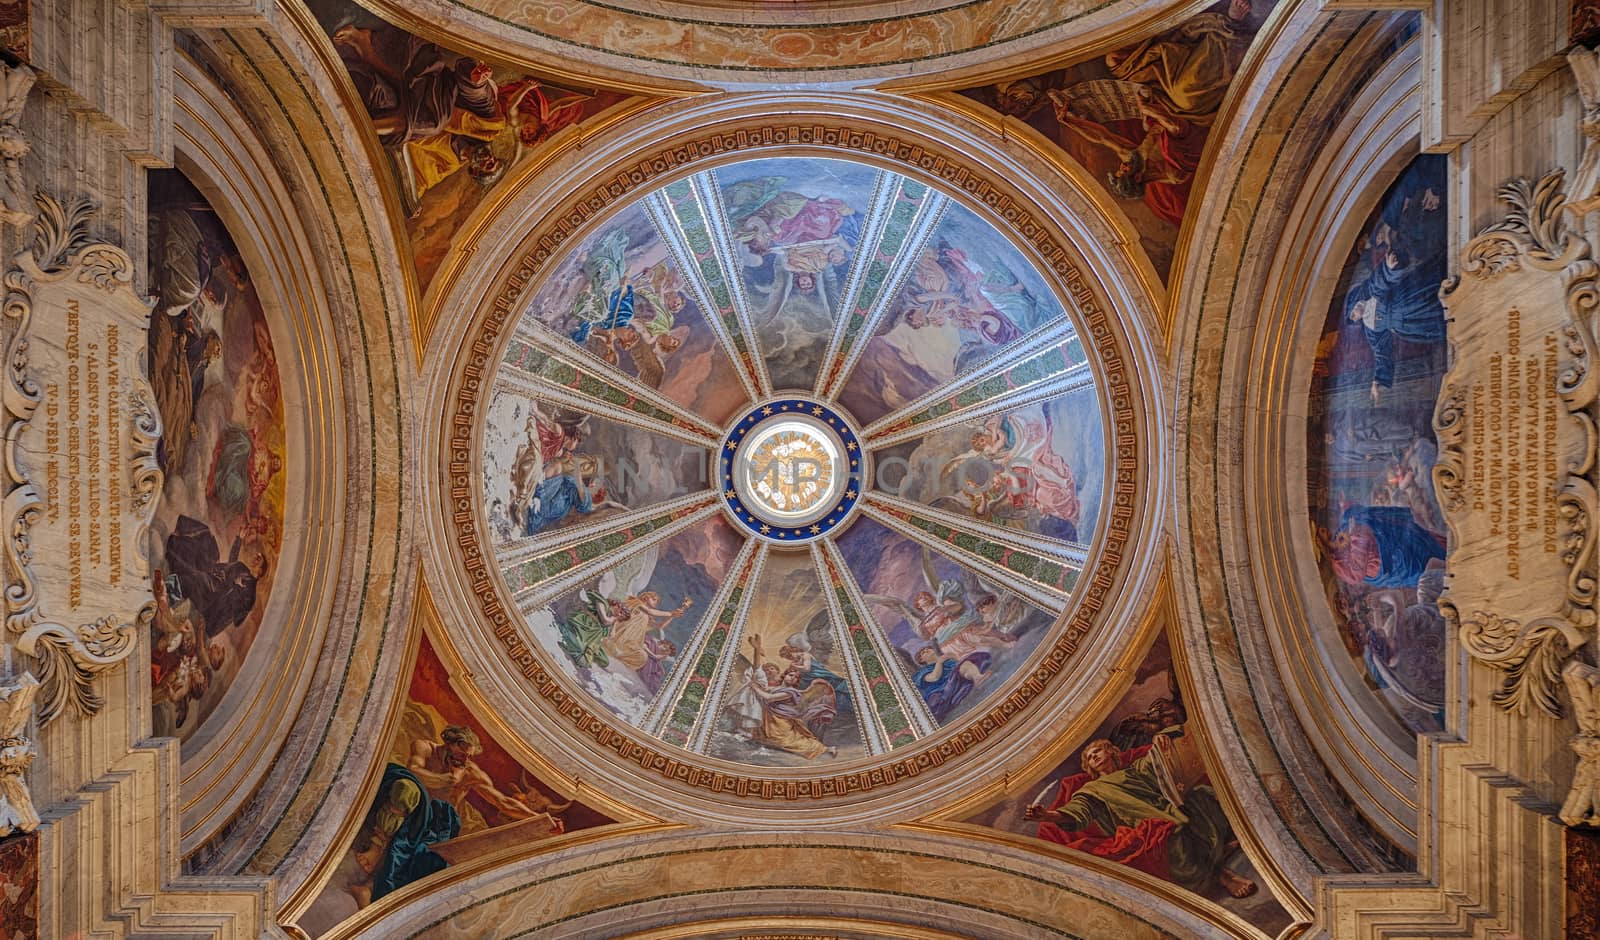 Fresco on ceiling of church St. Ignatius in Roma